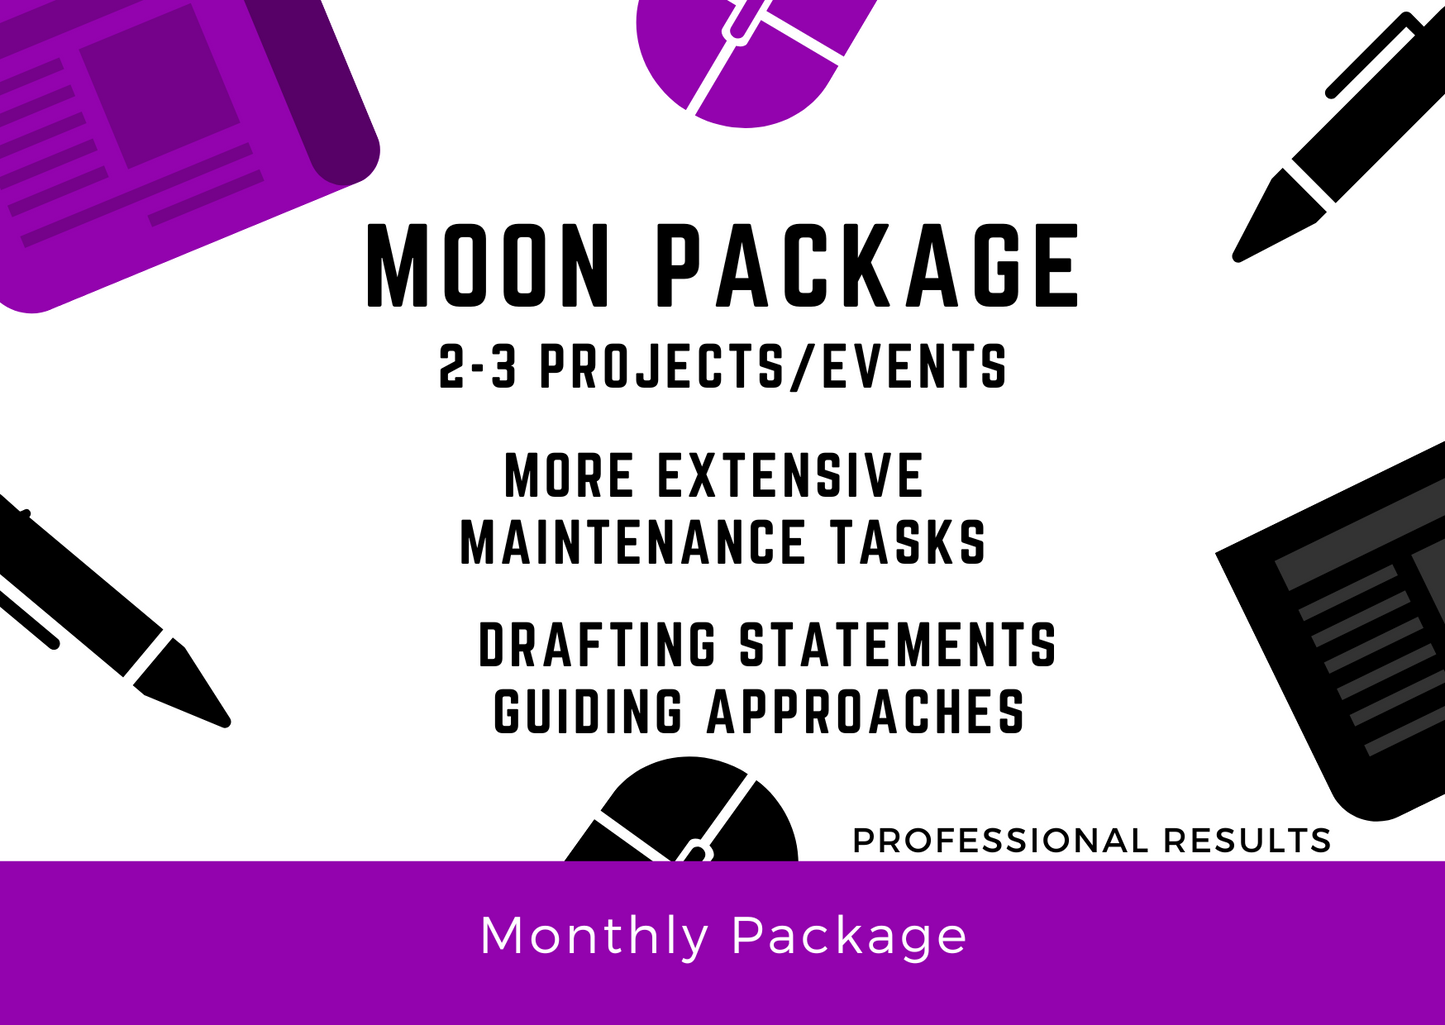 Moon Package